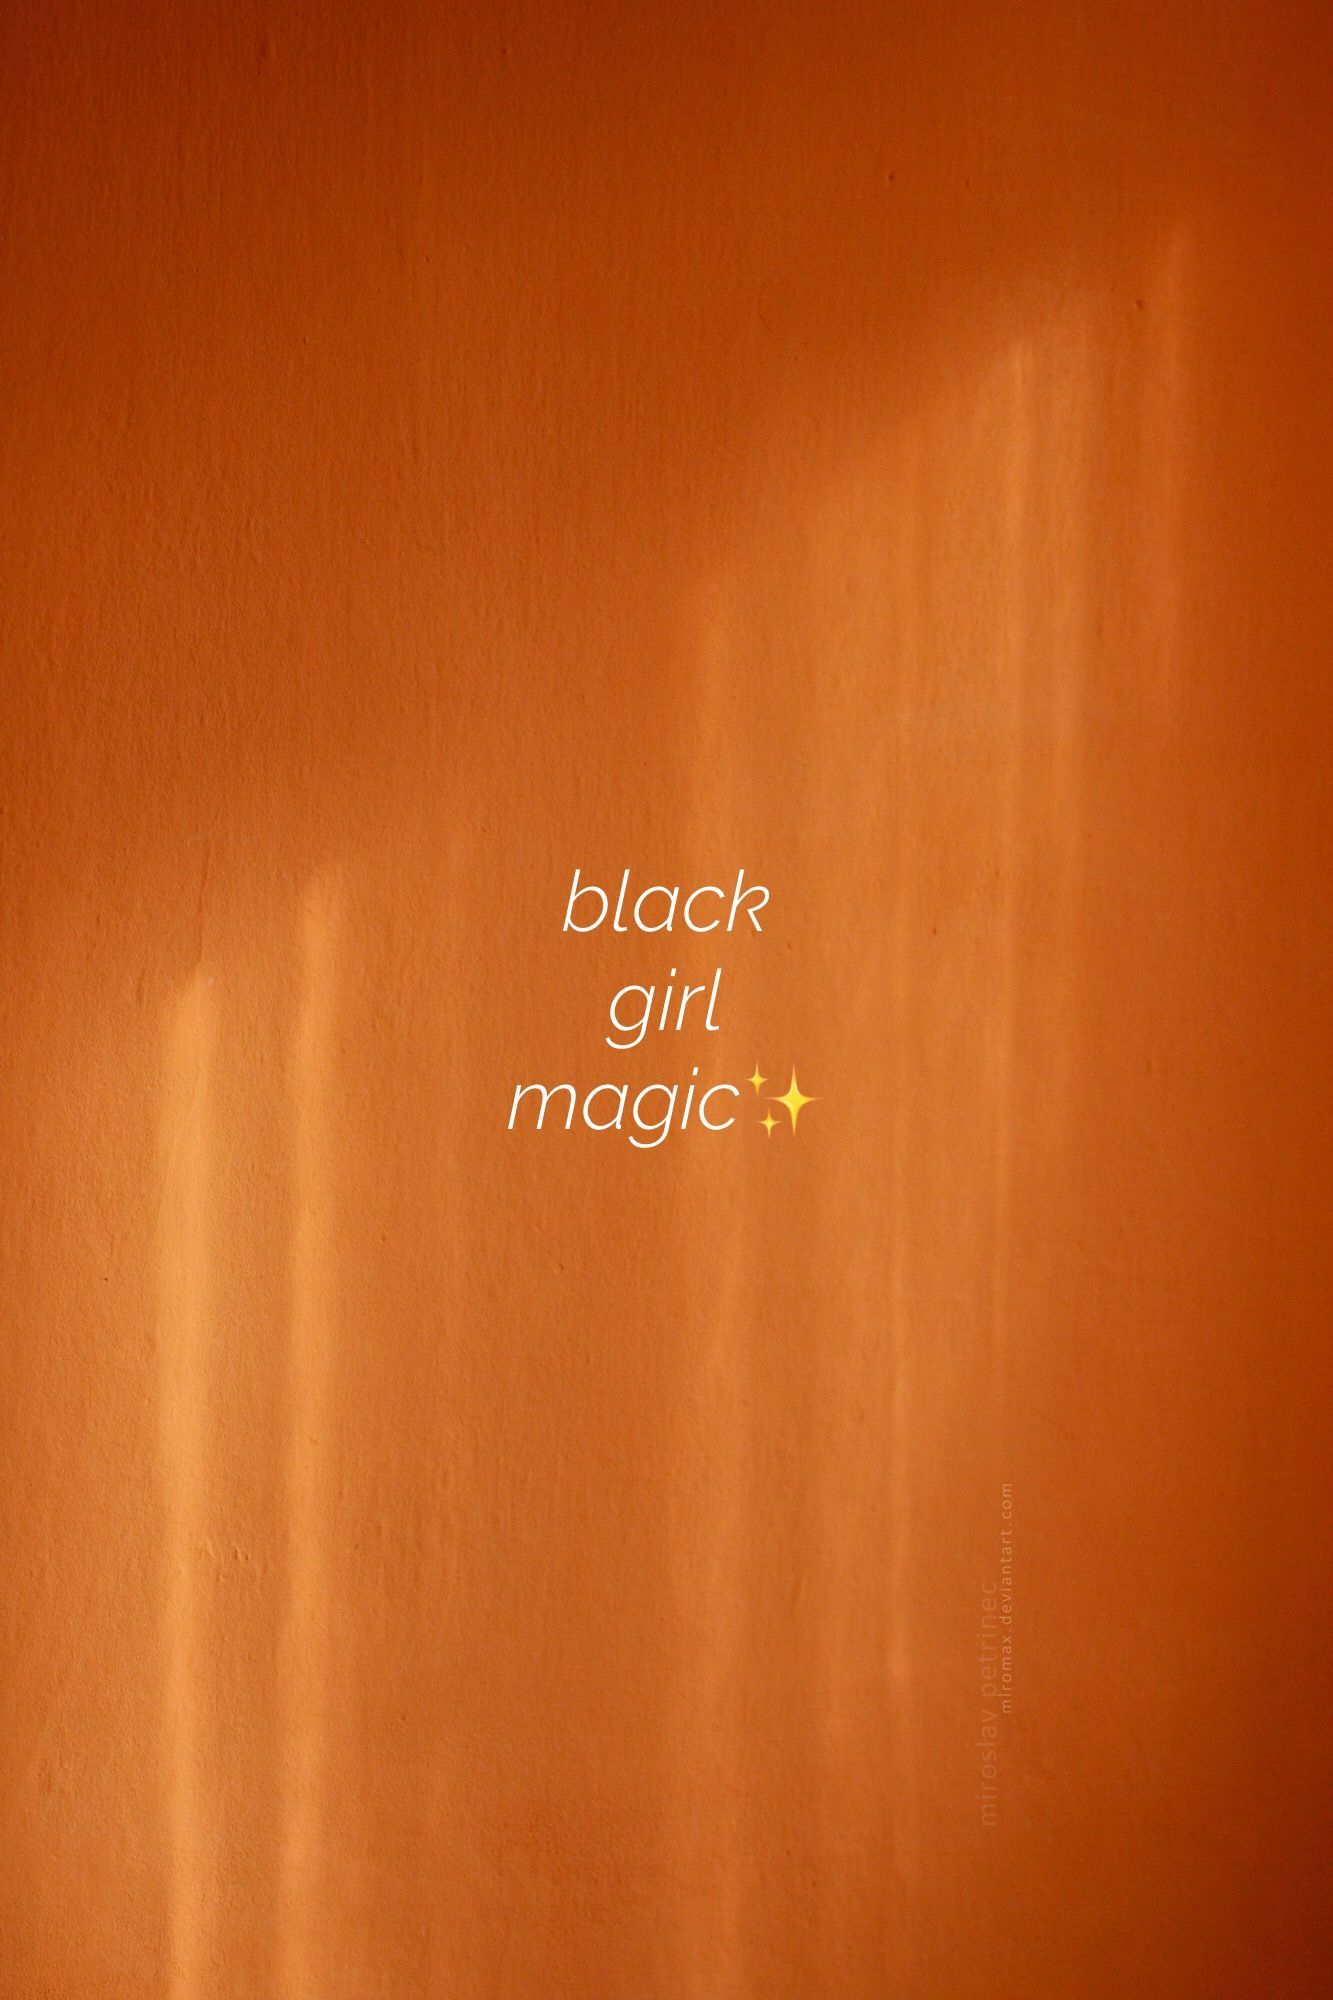 black girl magic✨ Made by me. Black girl aesthetic